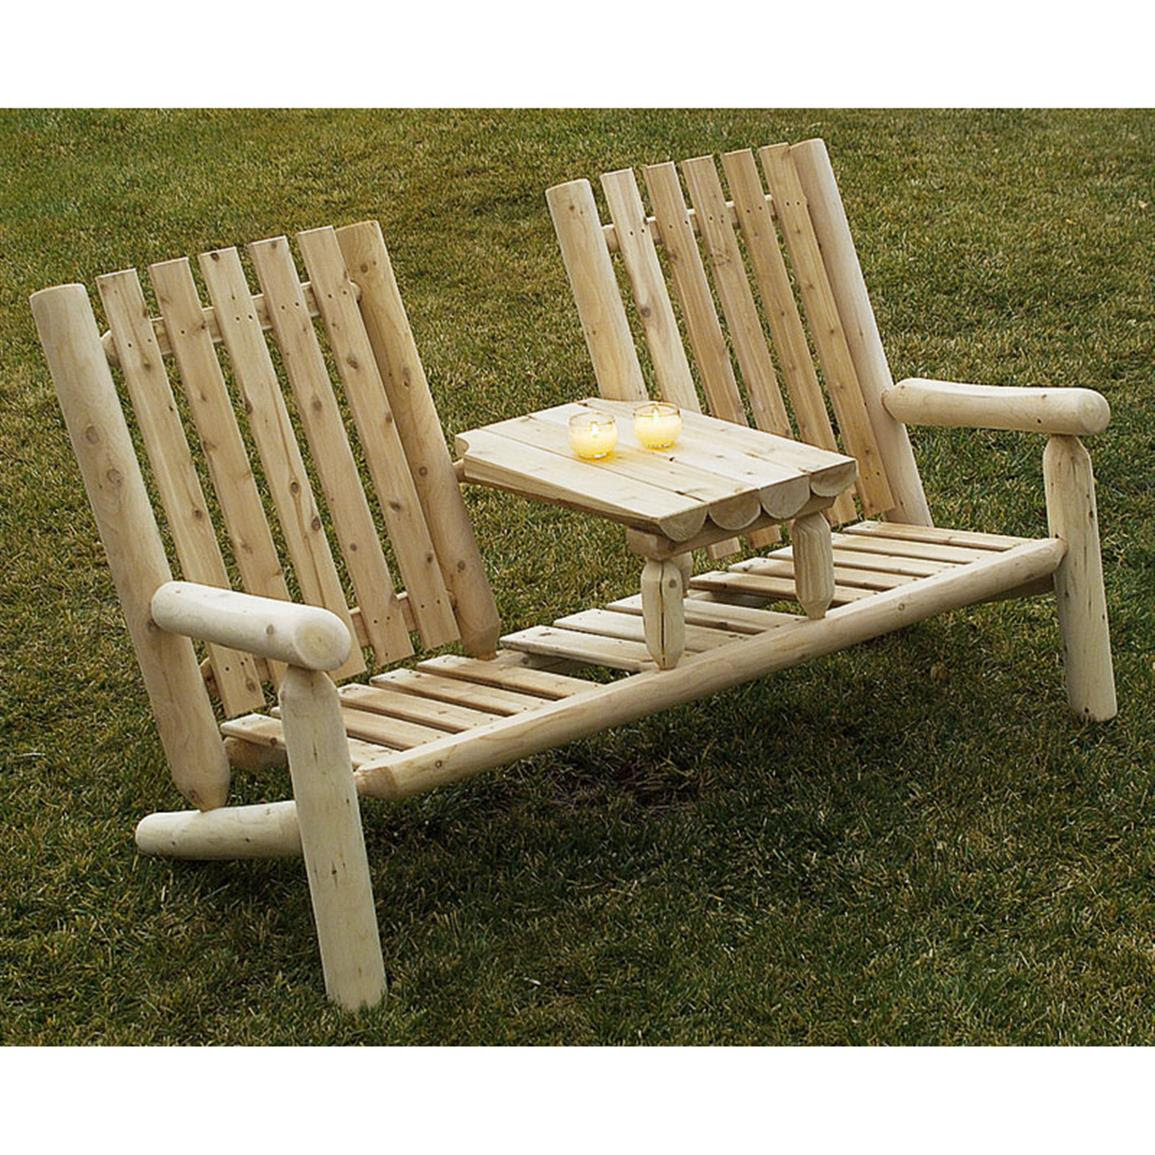 Cheap Garden Supplies Wood Furniture Outdoor